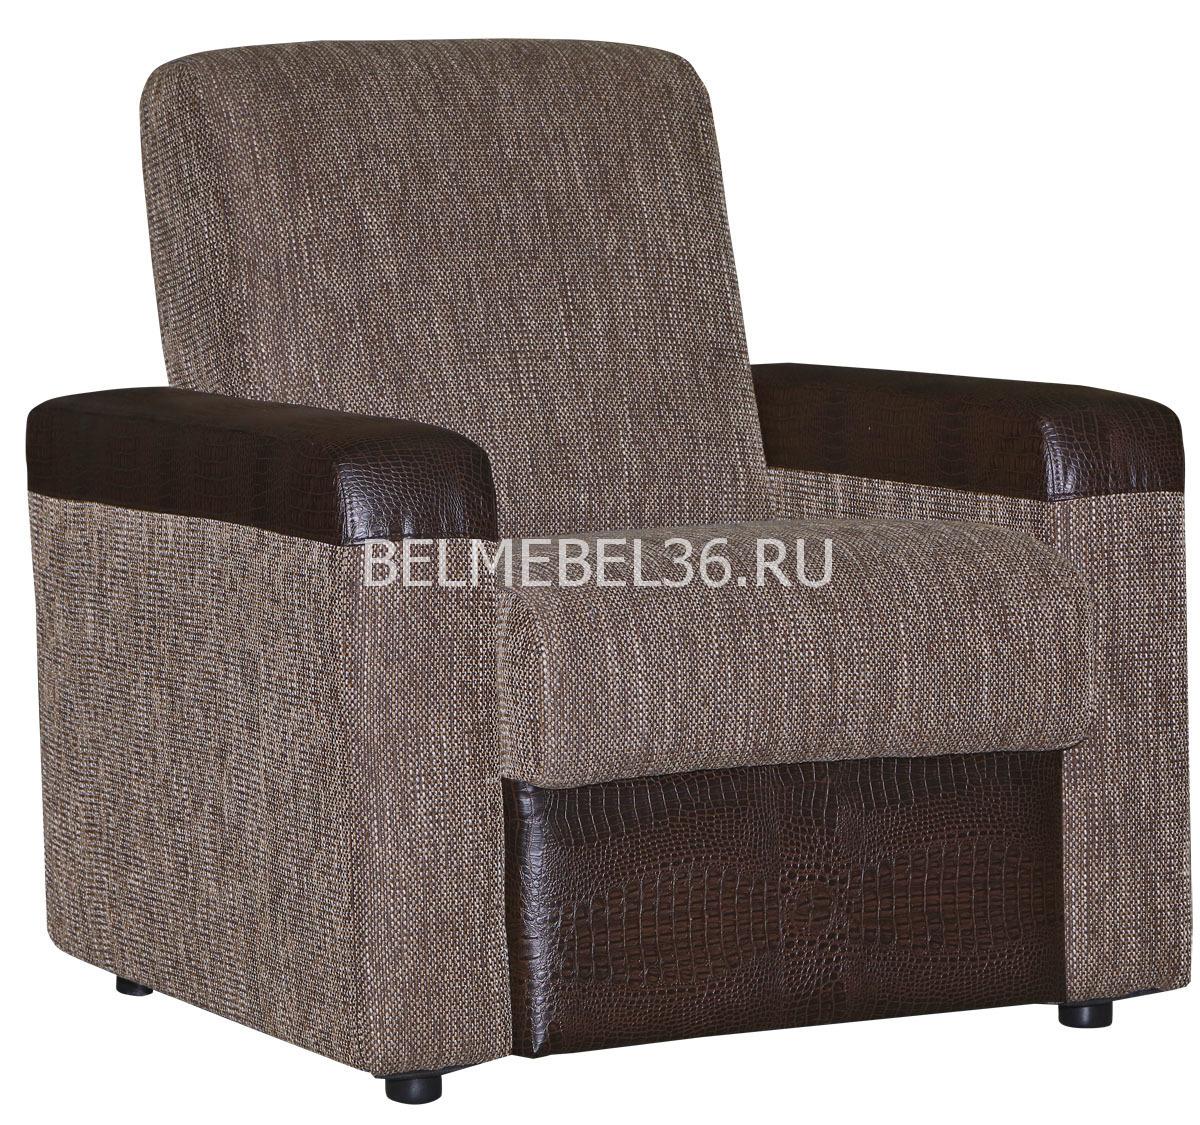 Кресло Астра-1 (12) на основе пружинного блока П-Д141 | Белорусская мебель в Воронеже